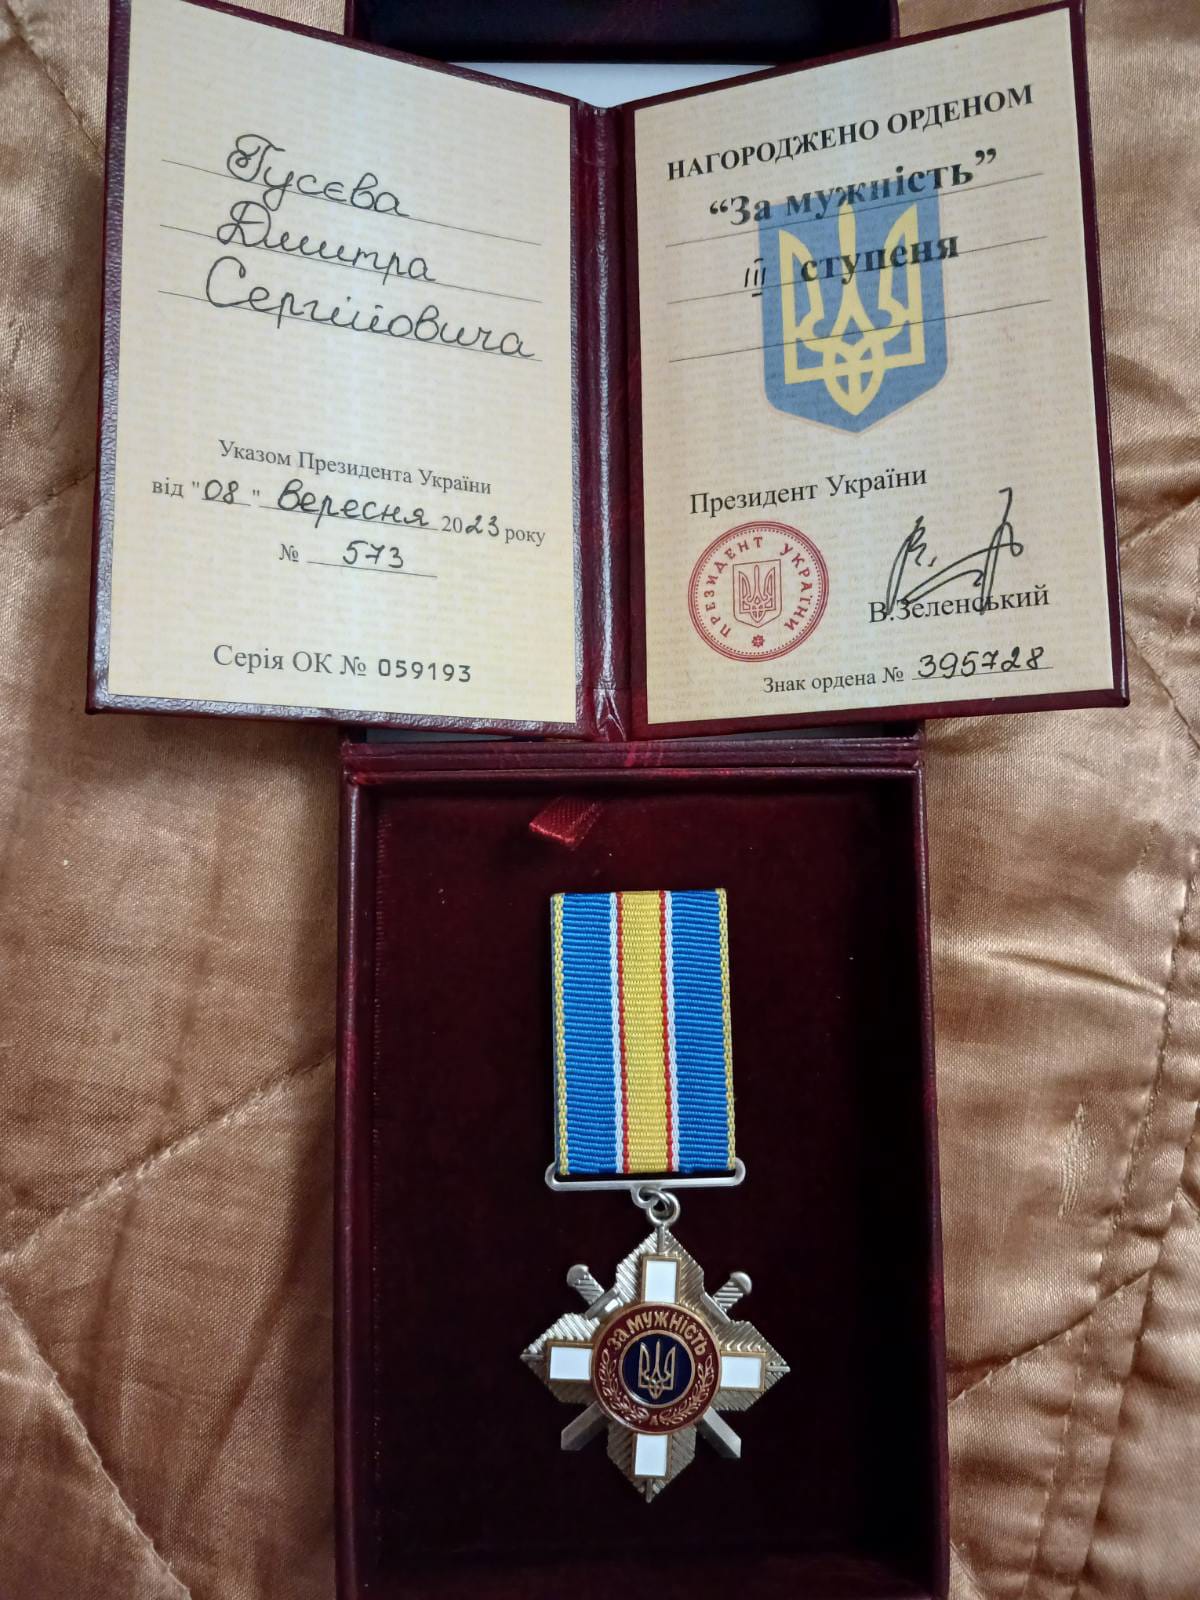 Воїна з Тульчинської громади нагороджено орденом «За мужність» ІІІ ступеня